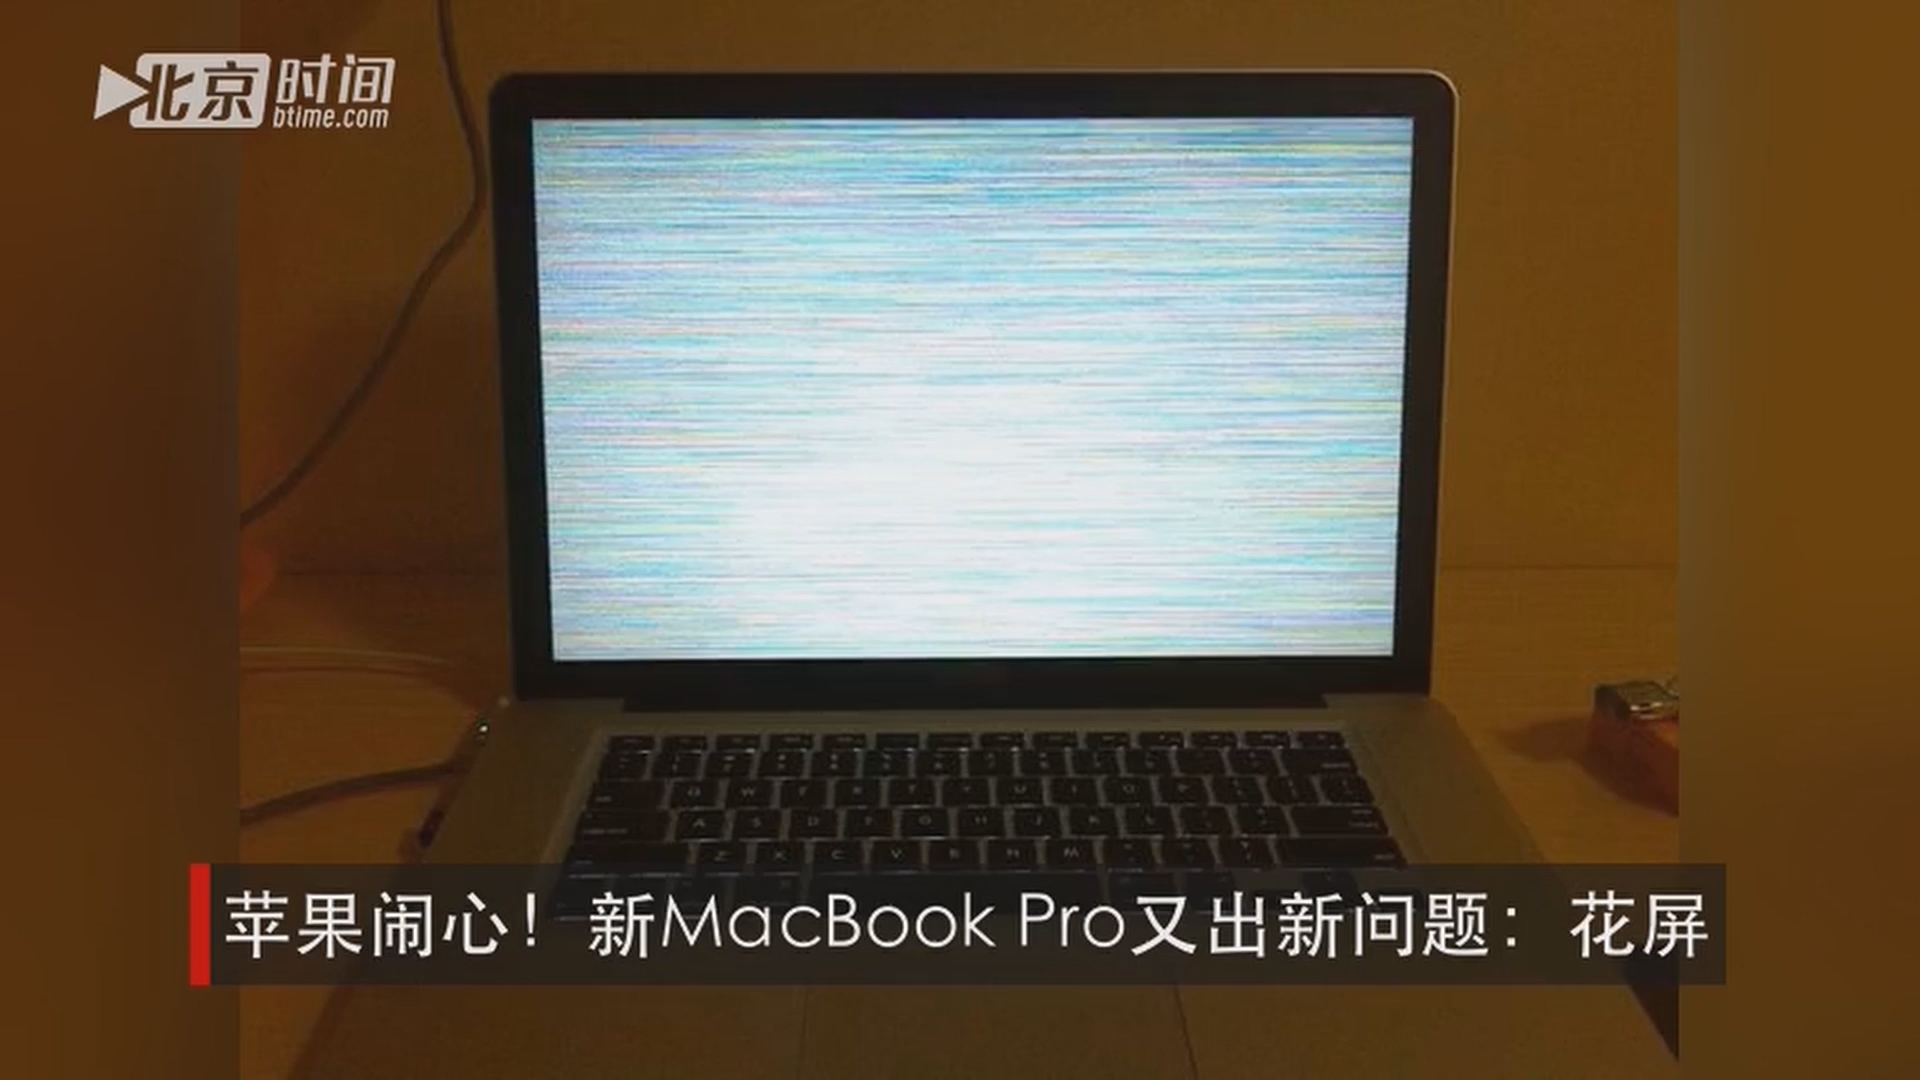 苹果闹心!新macbook pro又出新问题:花屏